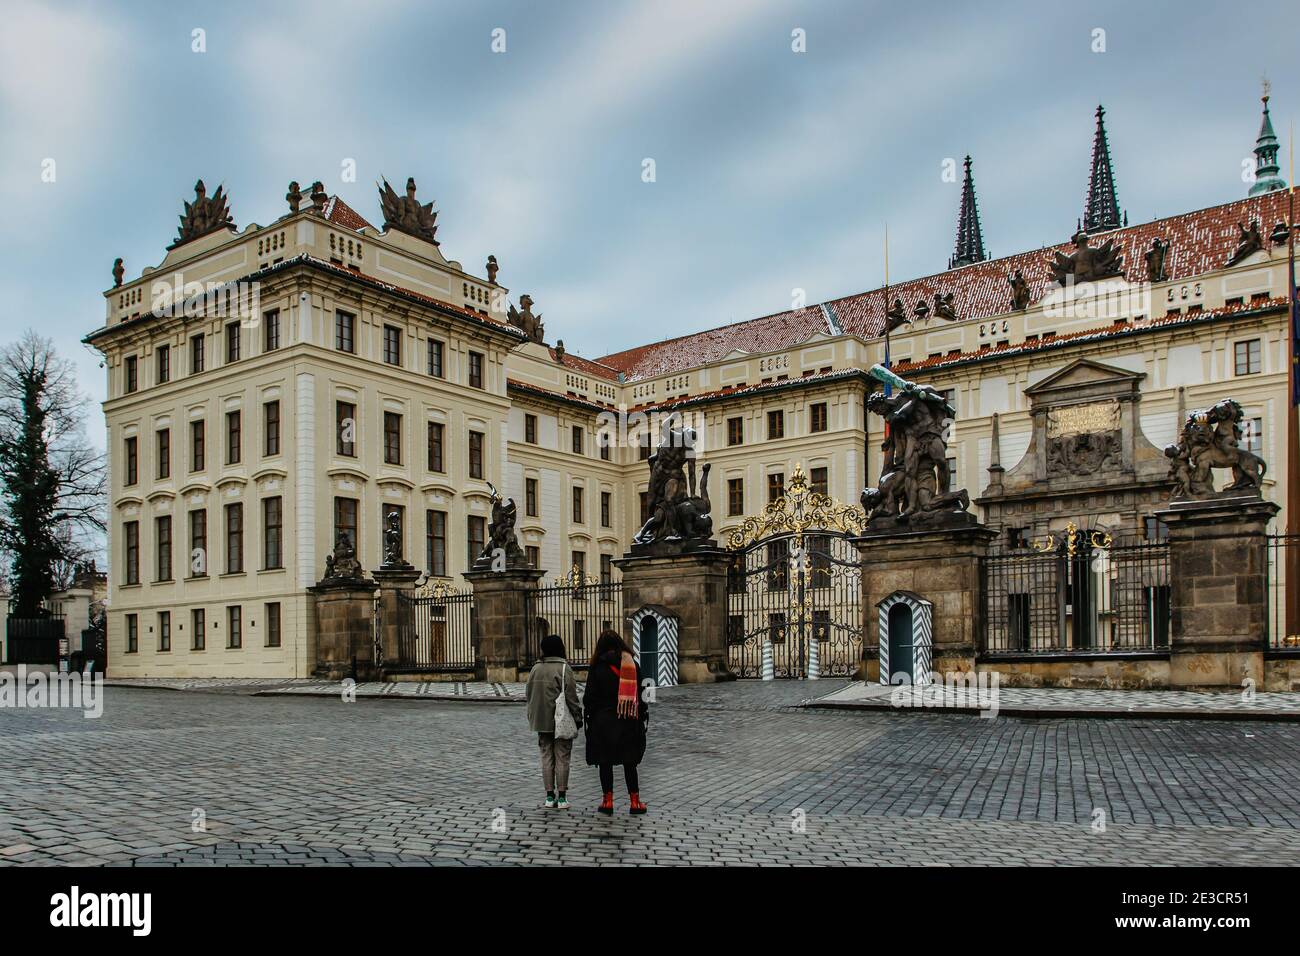 Leere Stadt Prag, Tschechische Republik. Keine Touristen, keine Besichtigungen während COVID 19 Pandemie im Januar 2021.Prager Burg ohne Menschen und Wachen.Amazi Stockfoto